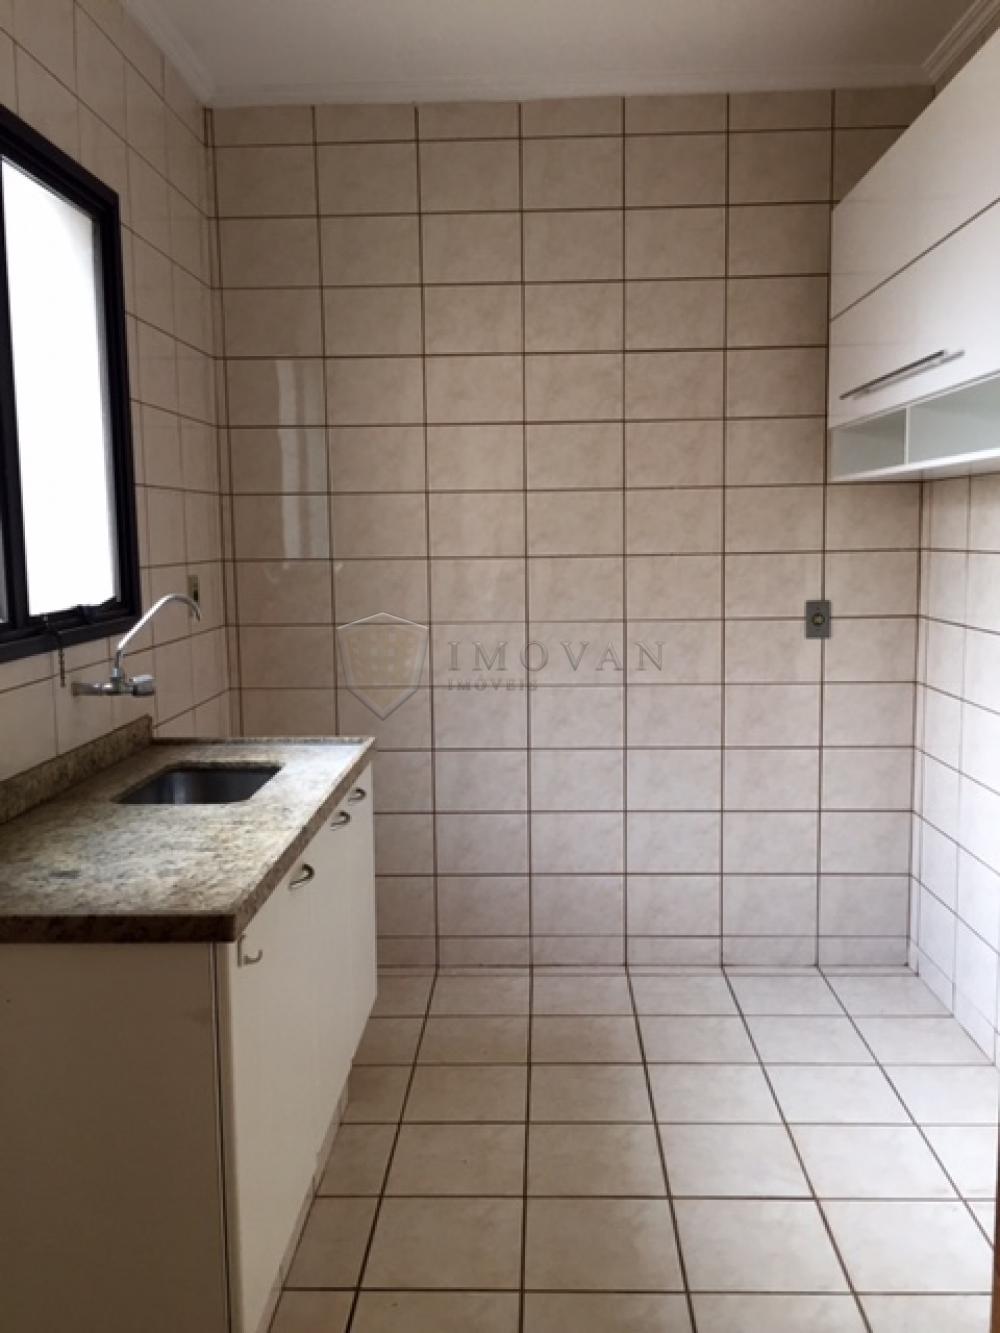 Comprar Apartamento / Padrão em Ribeirão Preto R$ 280.000,00 - Foto 3